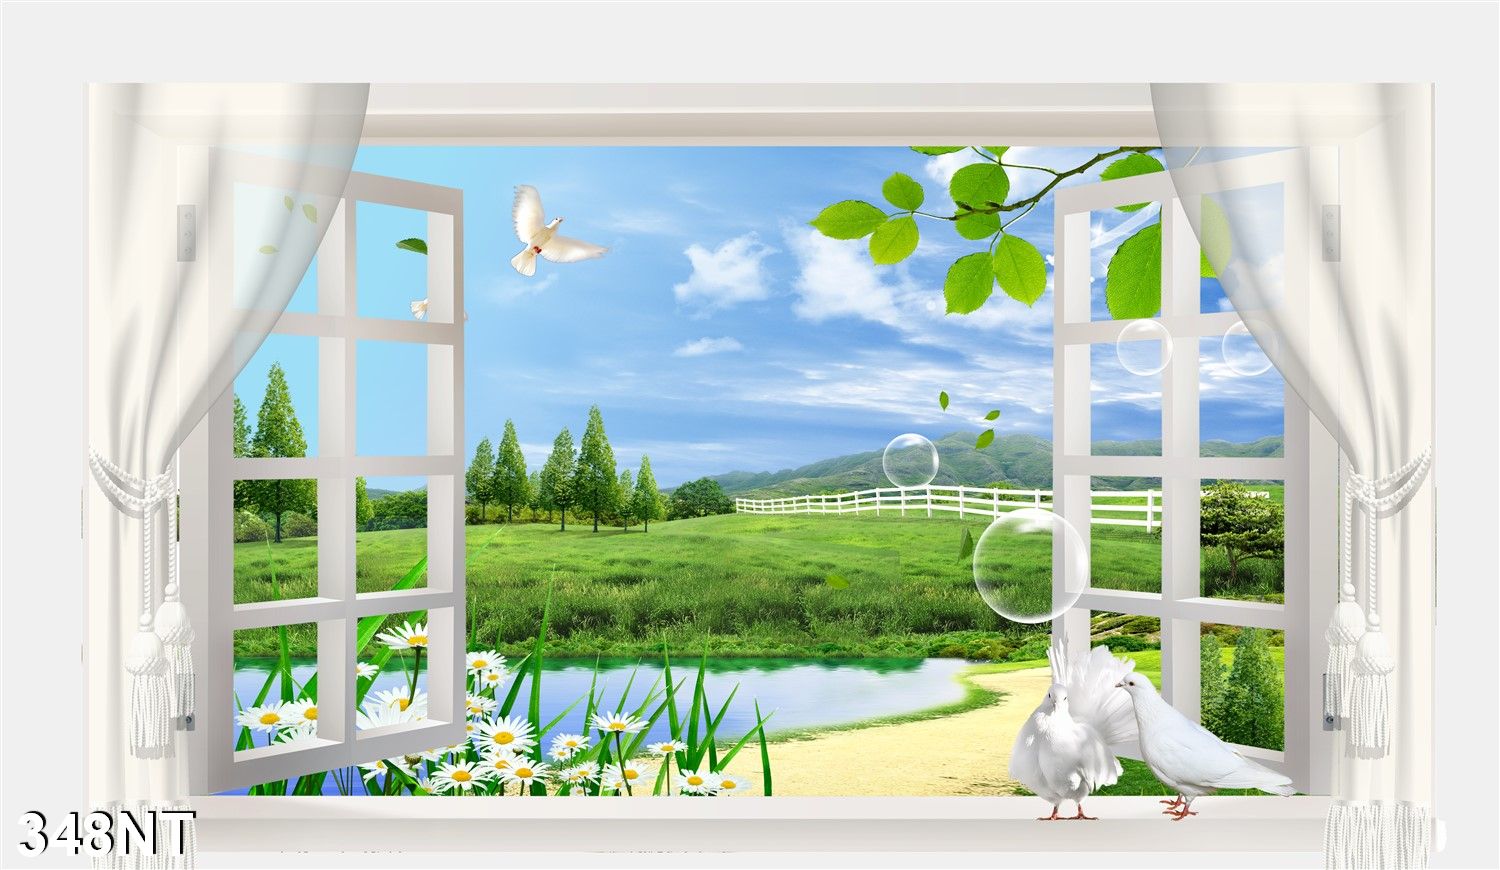 Lịch sử giá Tranh dán tường 3d cửa sổ phong cảnh đẹp 348nt - tranh ...